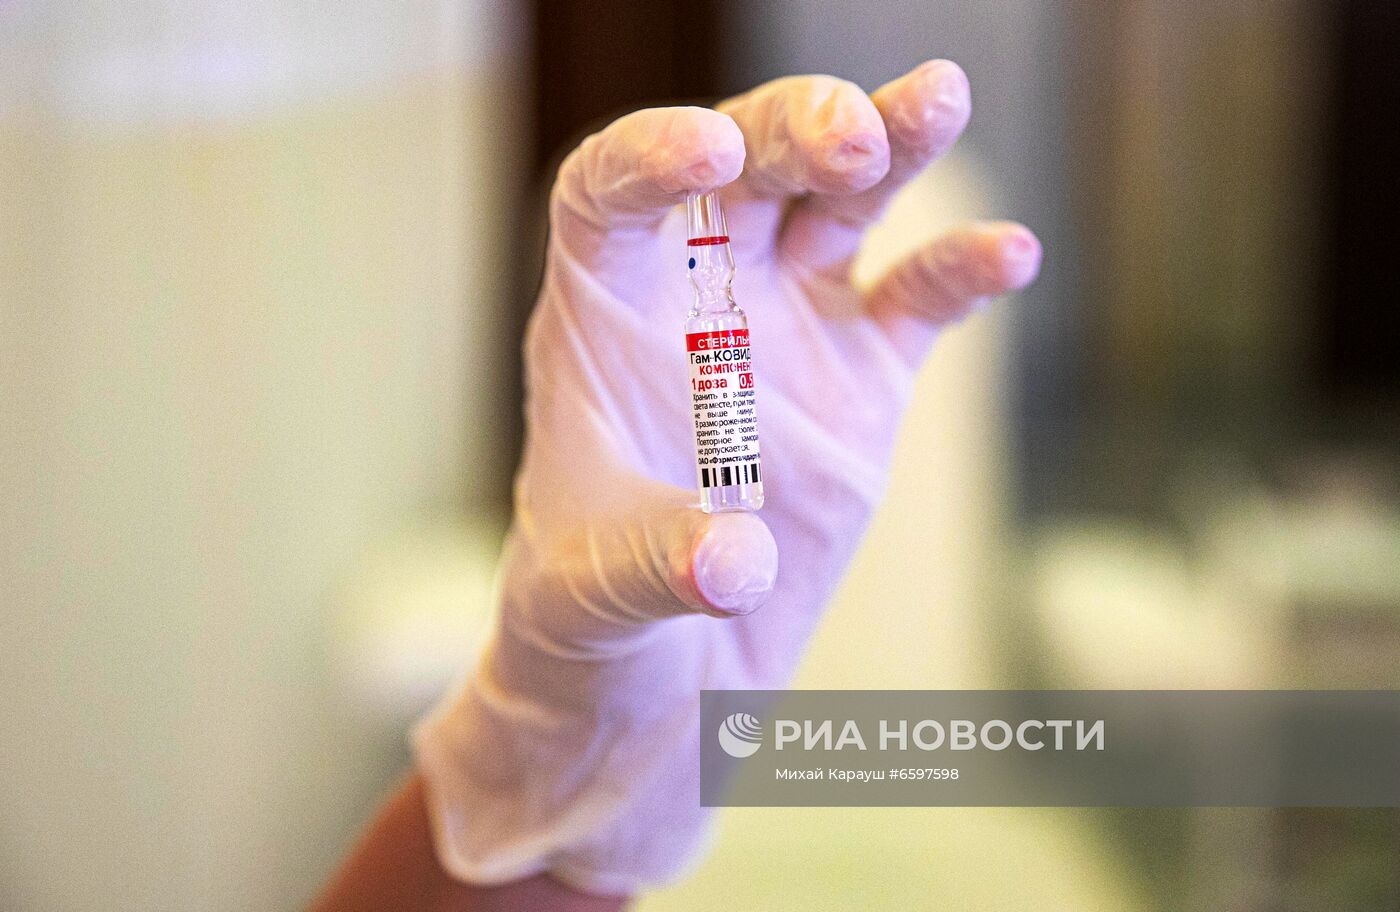 "Марафон" вакцинации препаратом Sputnik V в Молдавии